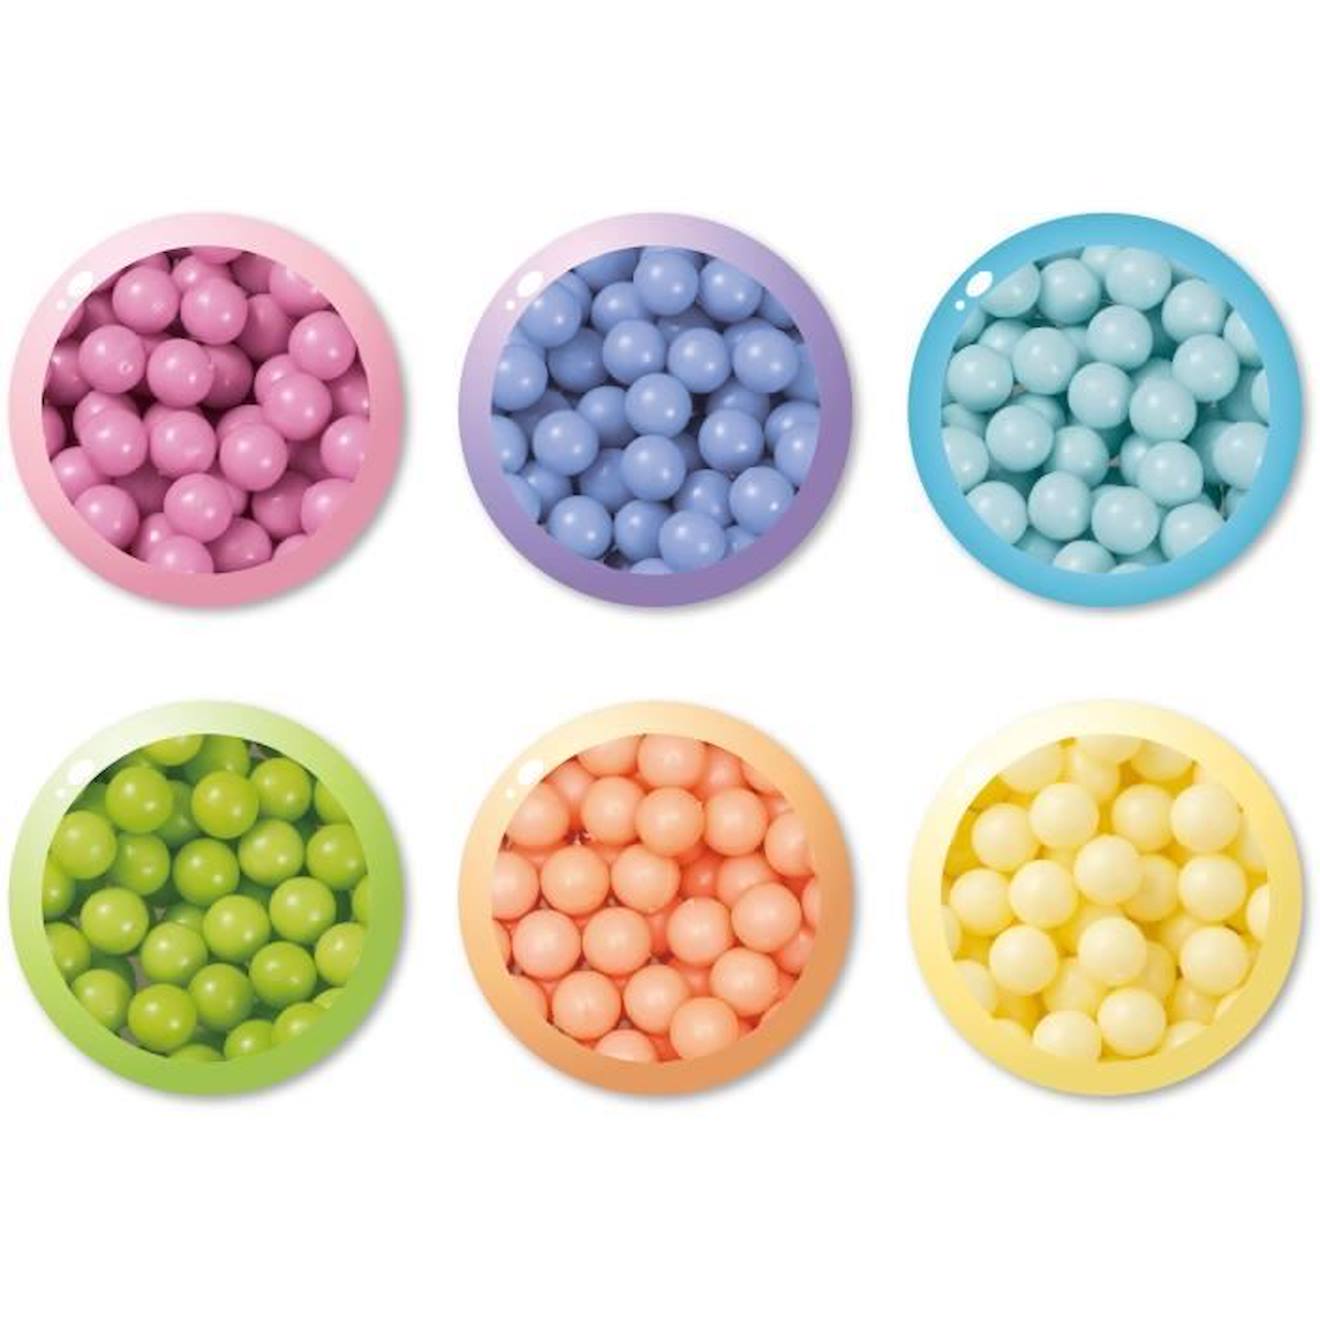 Aquabeads - Recharge pastel de 800 perles pour loisirs créatifs pour enfants  à partir de 4 ans bleu - Aquabeads